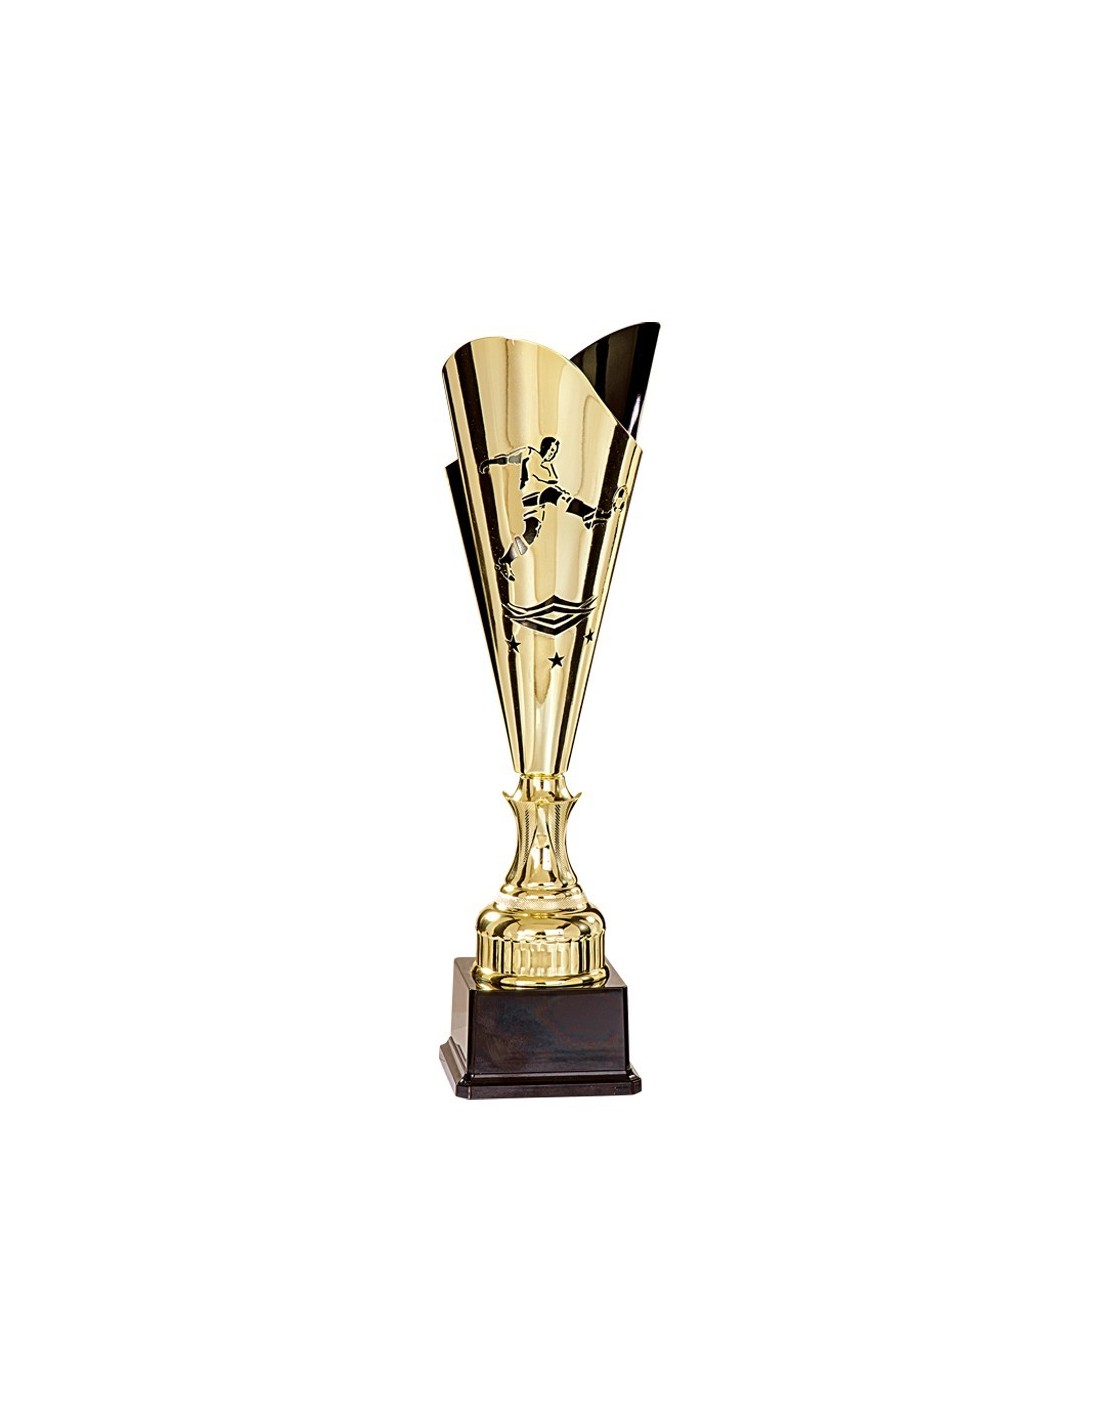 Trophée Football H342D08 – Distributeur de coupes et médailles